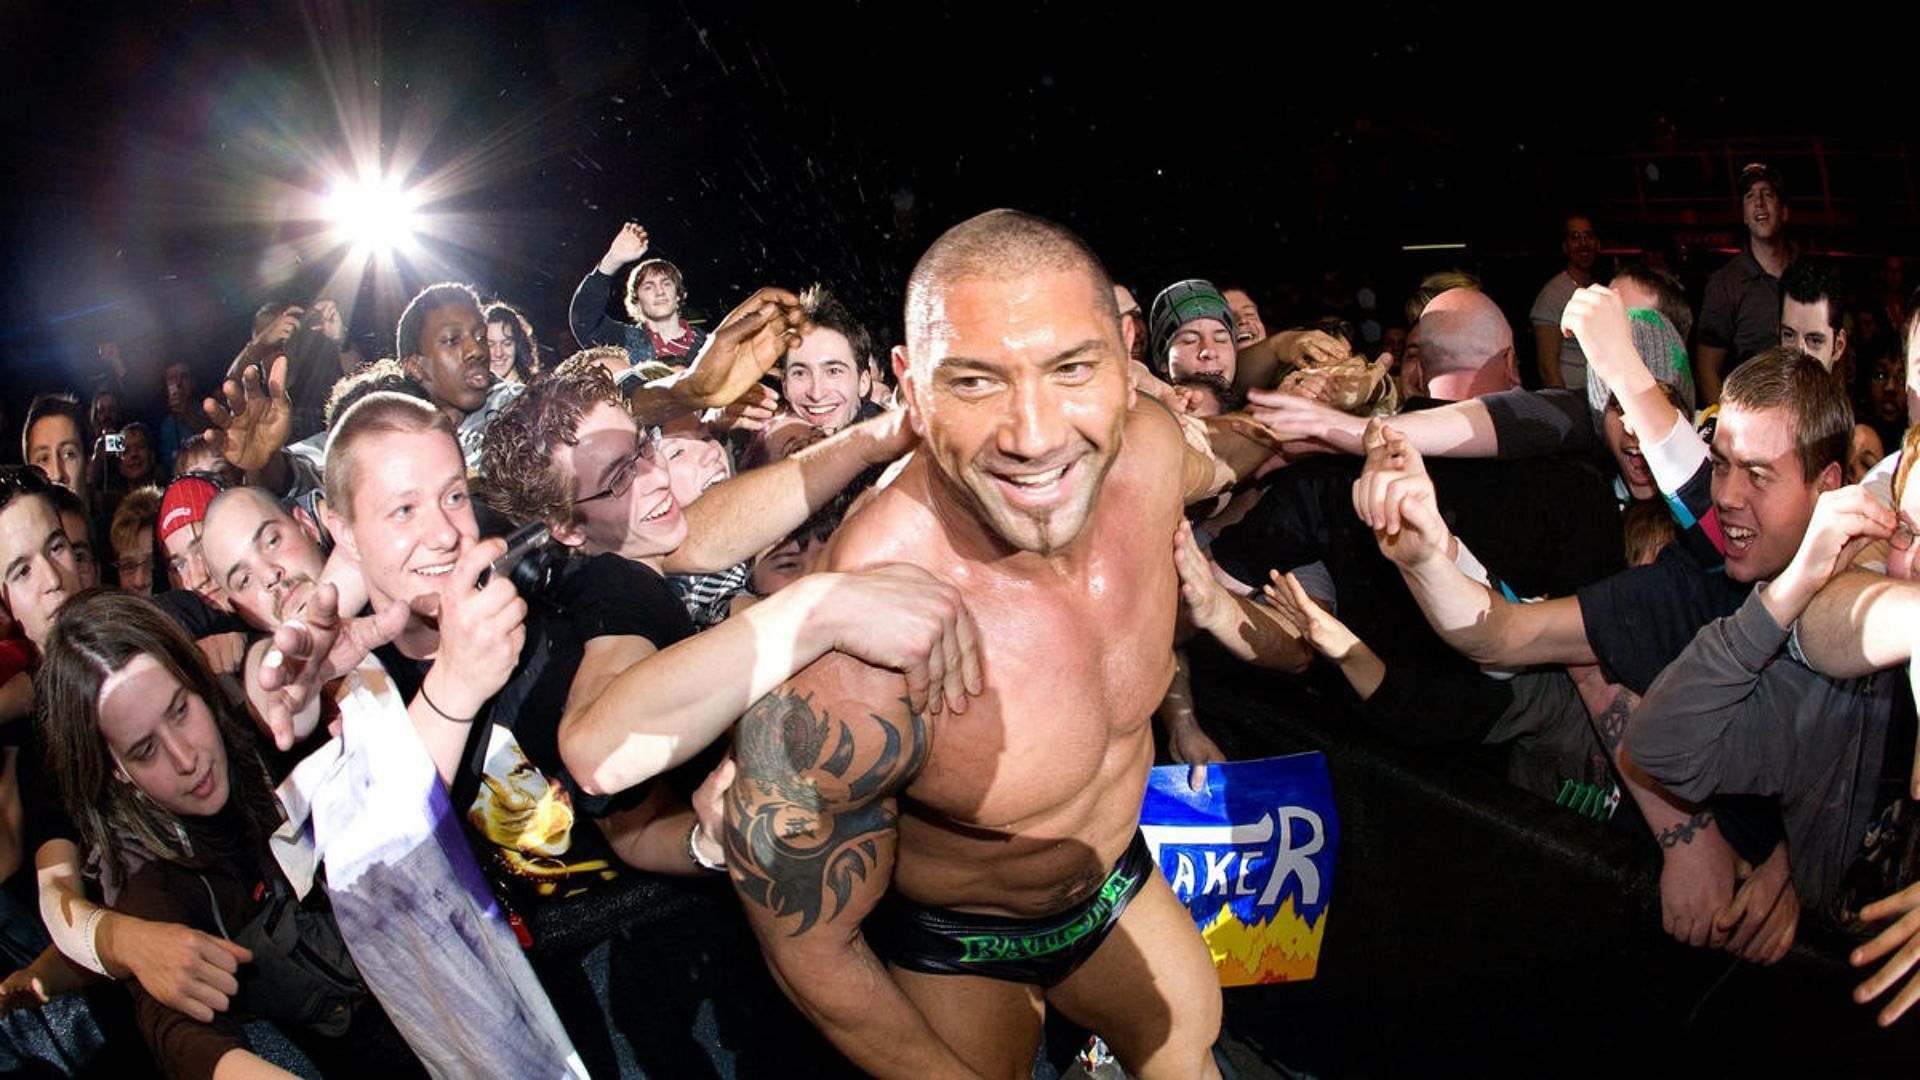 Batista unfortunately faced destructive backlash upon return to WWE back in 2014.